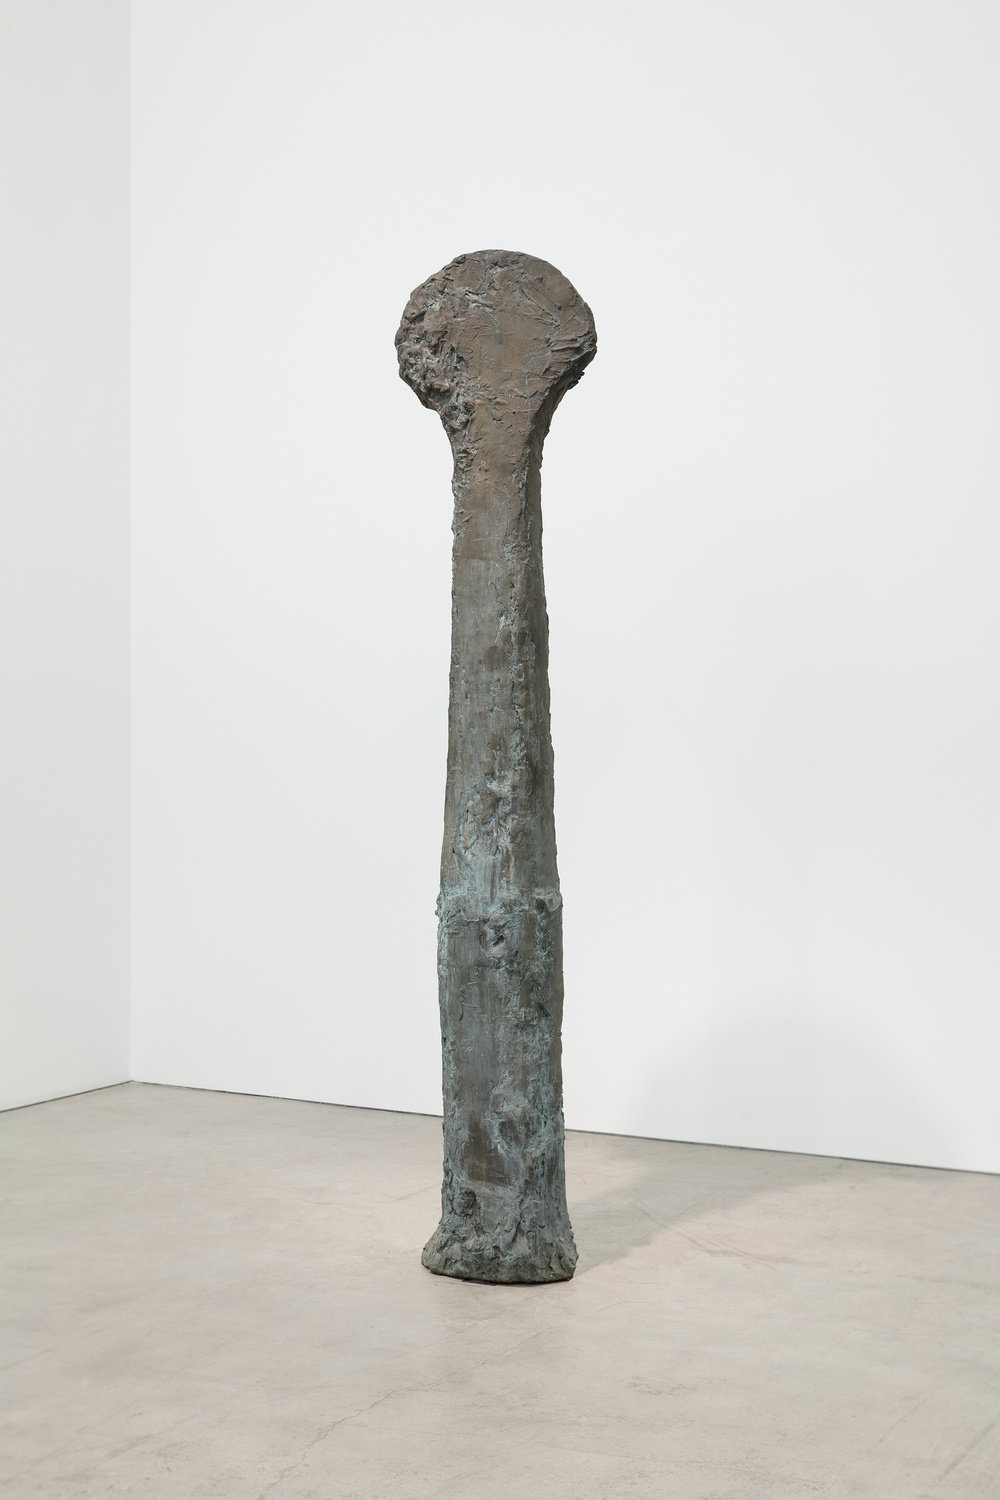 Pepper, ritual marker, 1988, cast bronze, ed. 2:5, 100 x 22 x 17 in., 254 x 55.9 x 43.2 cm, non 40.359 pierre le hors